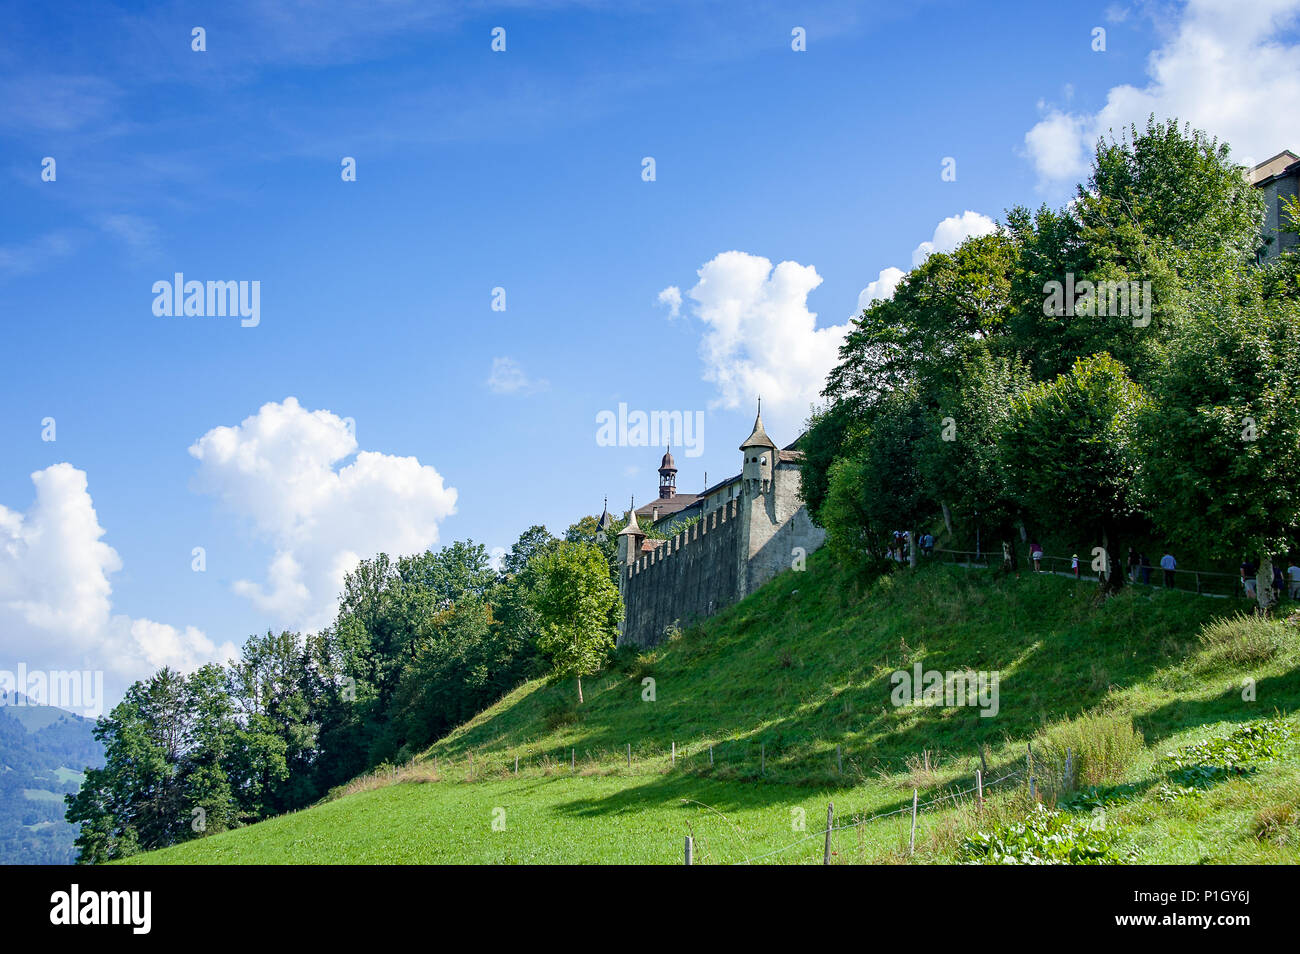 Vue de remparts et porte de Gruyeres, vieille ville Suisse. Paysage verdoyant, surmonté d'arbres et colline blue cloudy sky Banque D'Images